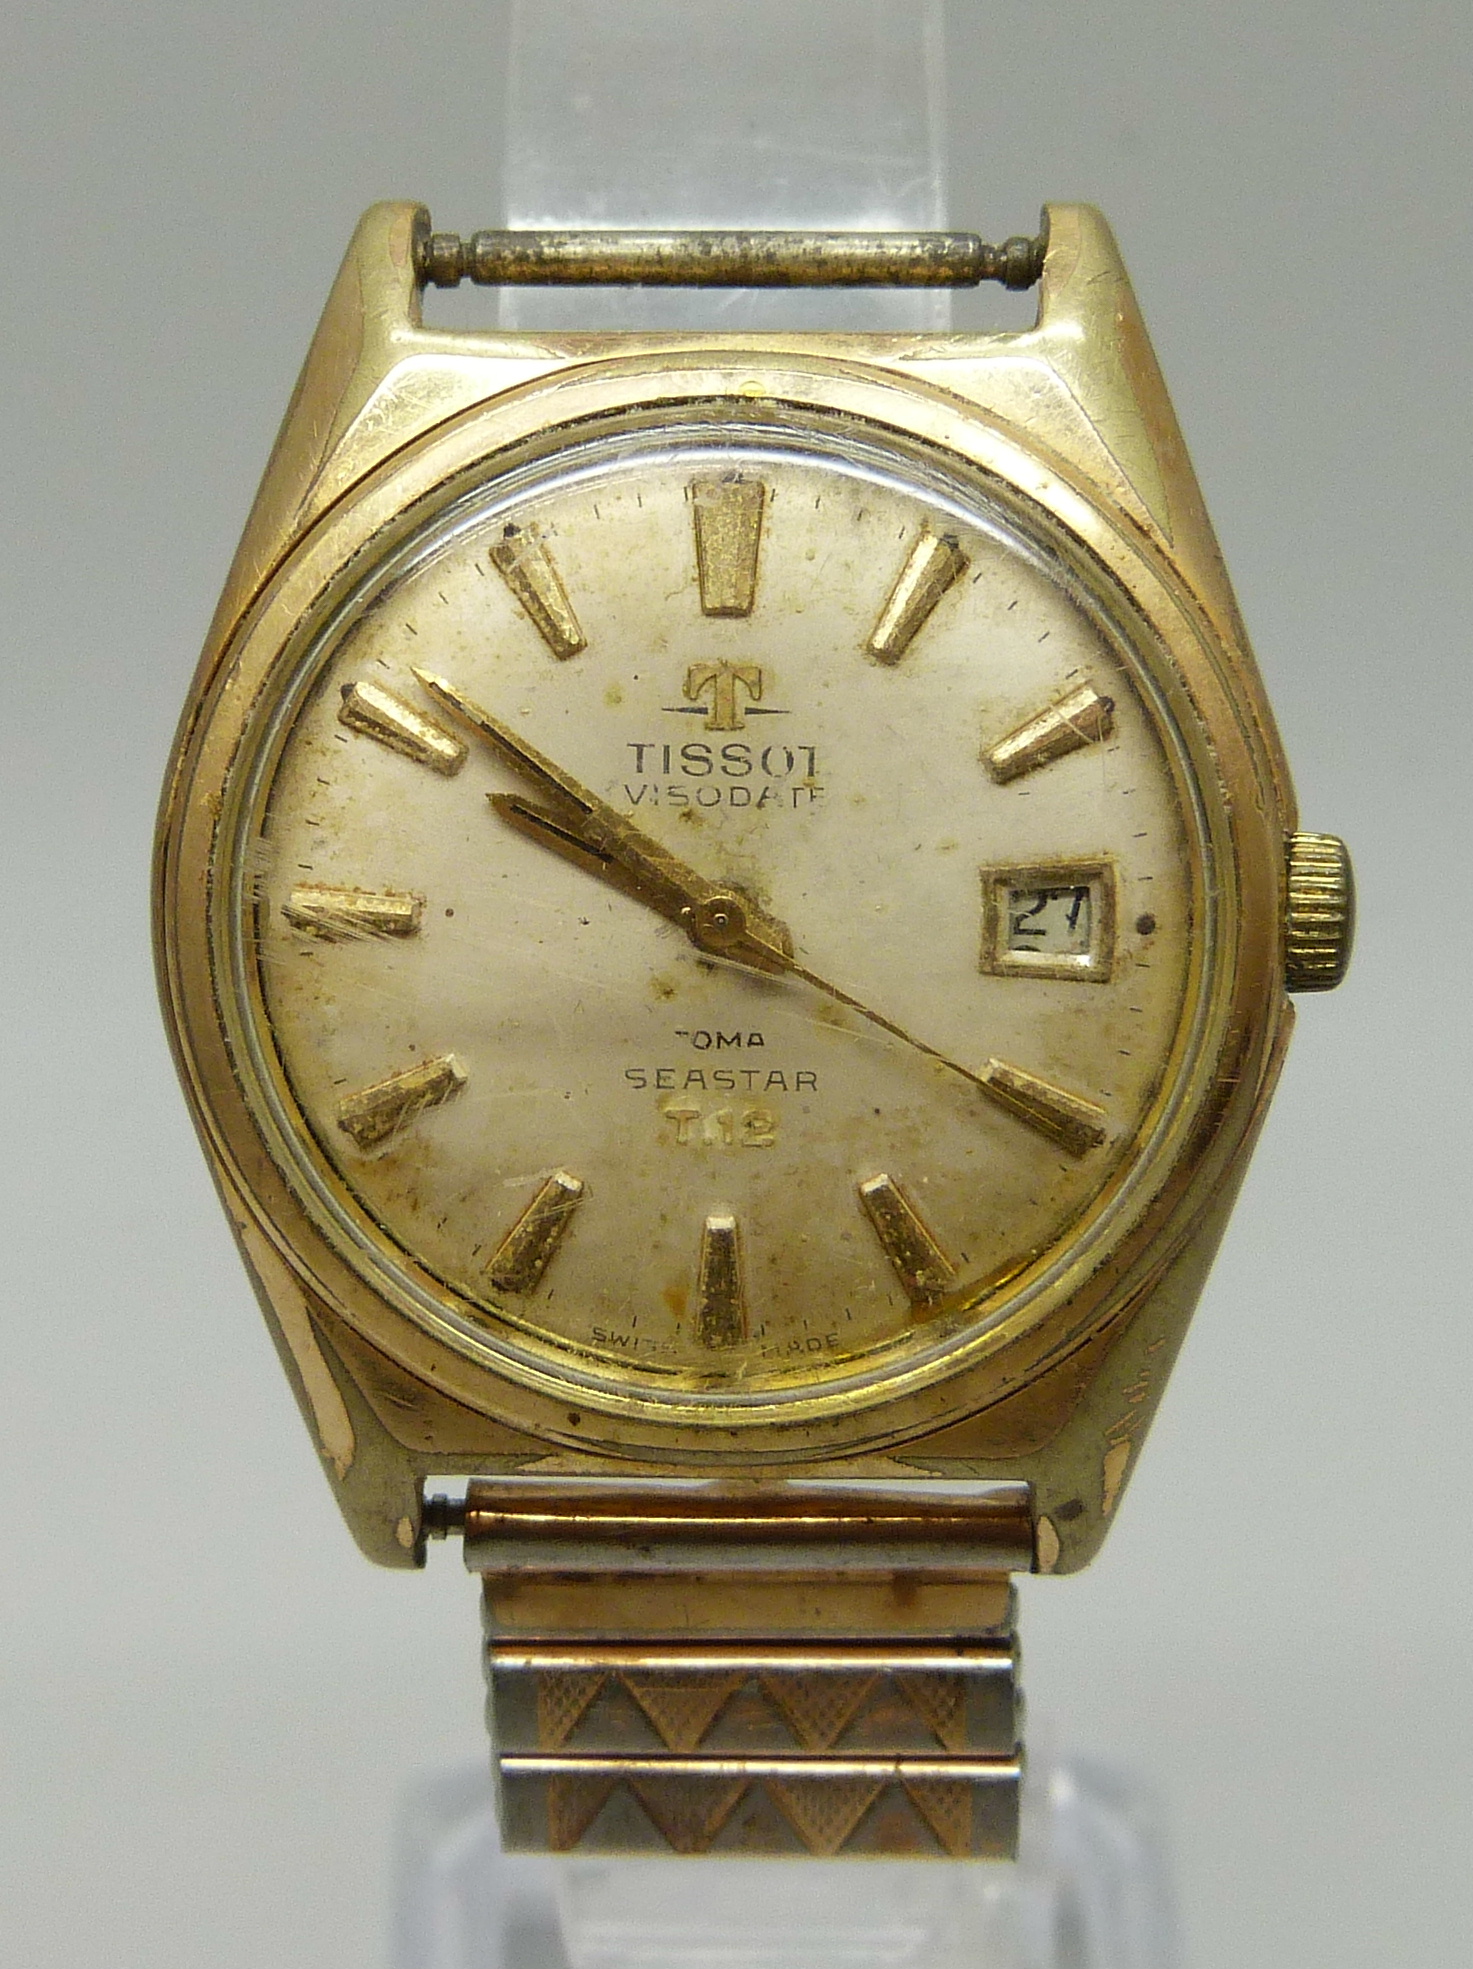 A gentleman's Tissot Visodate wristwatch